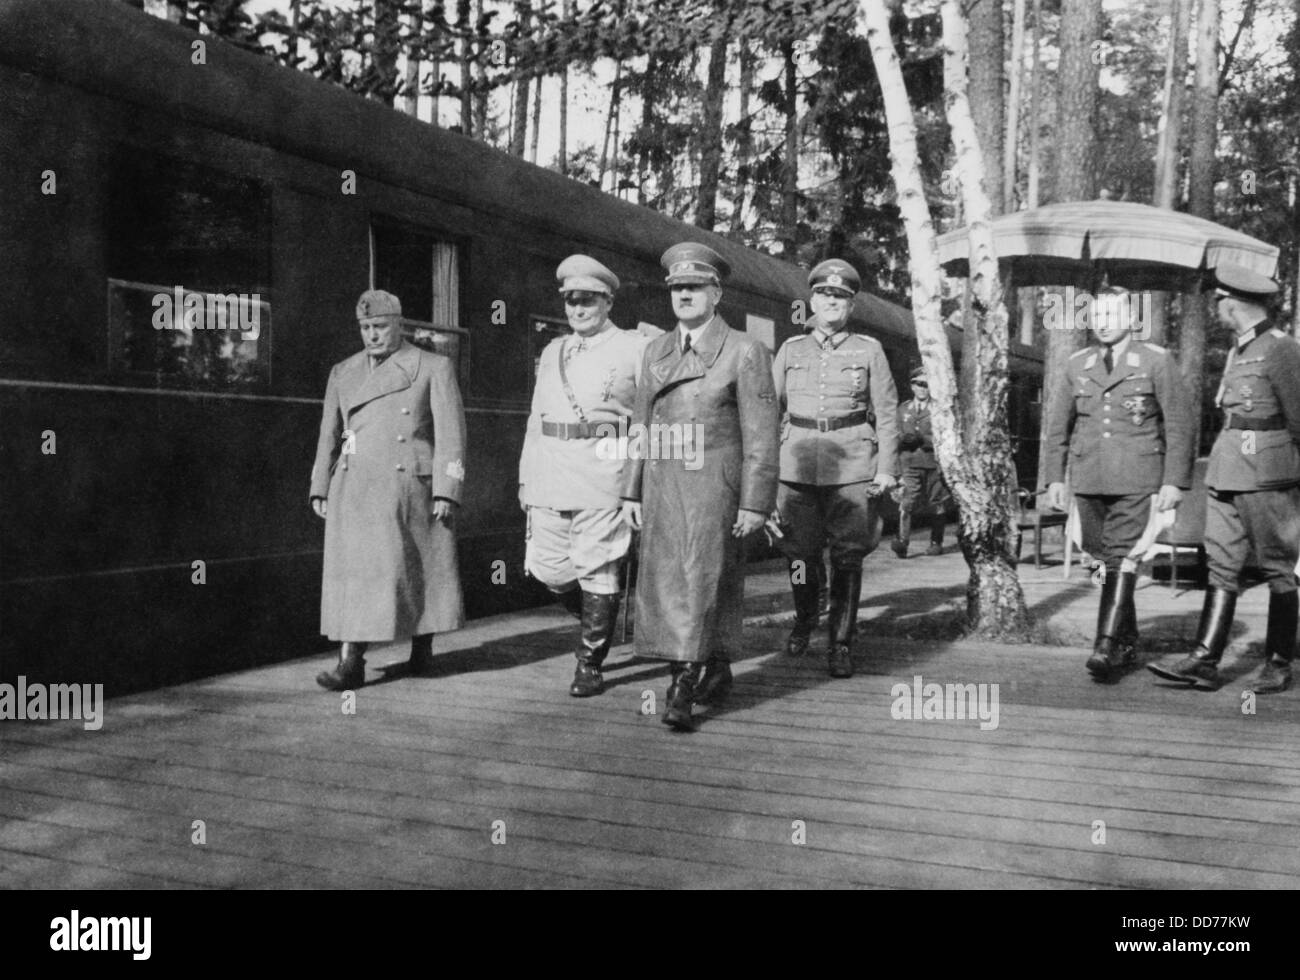 Adolf Hitler, Hermann Goering, e Benito Mussolini. Essi camminano con altri tedeschi ufficiali militari alla stazione ferroviaria, su Foto Stock